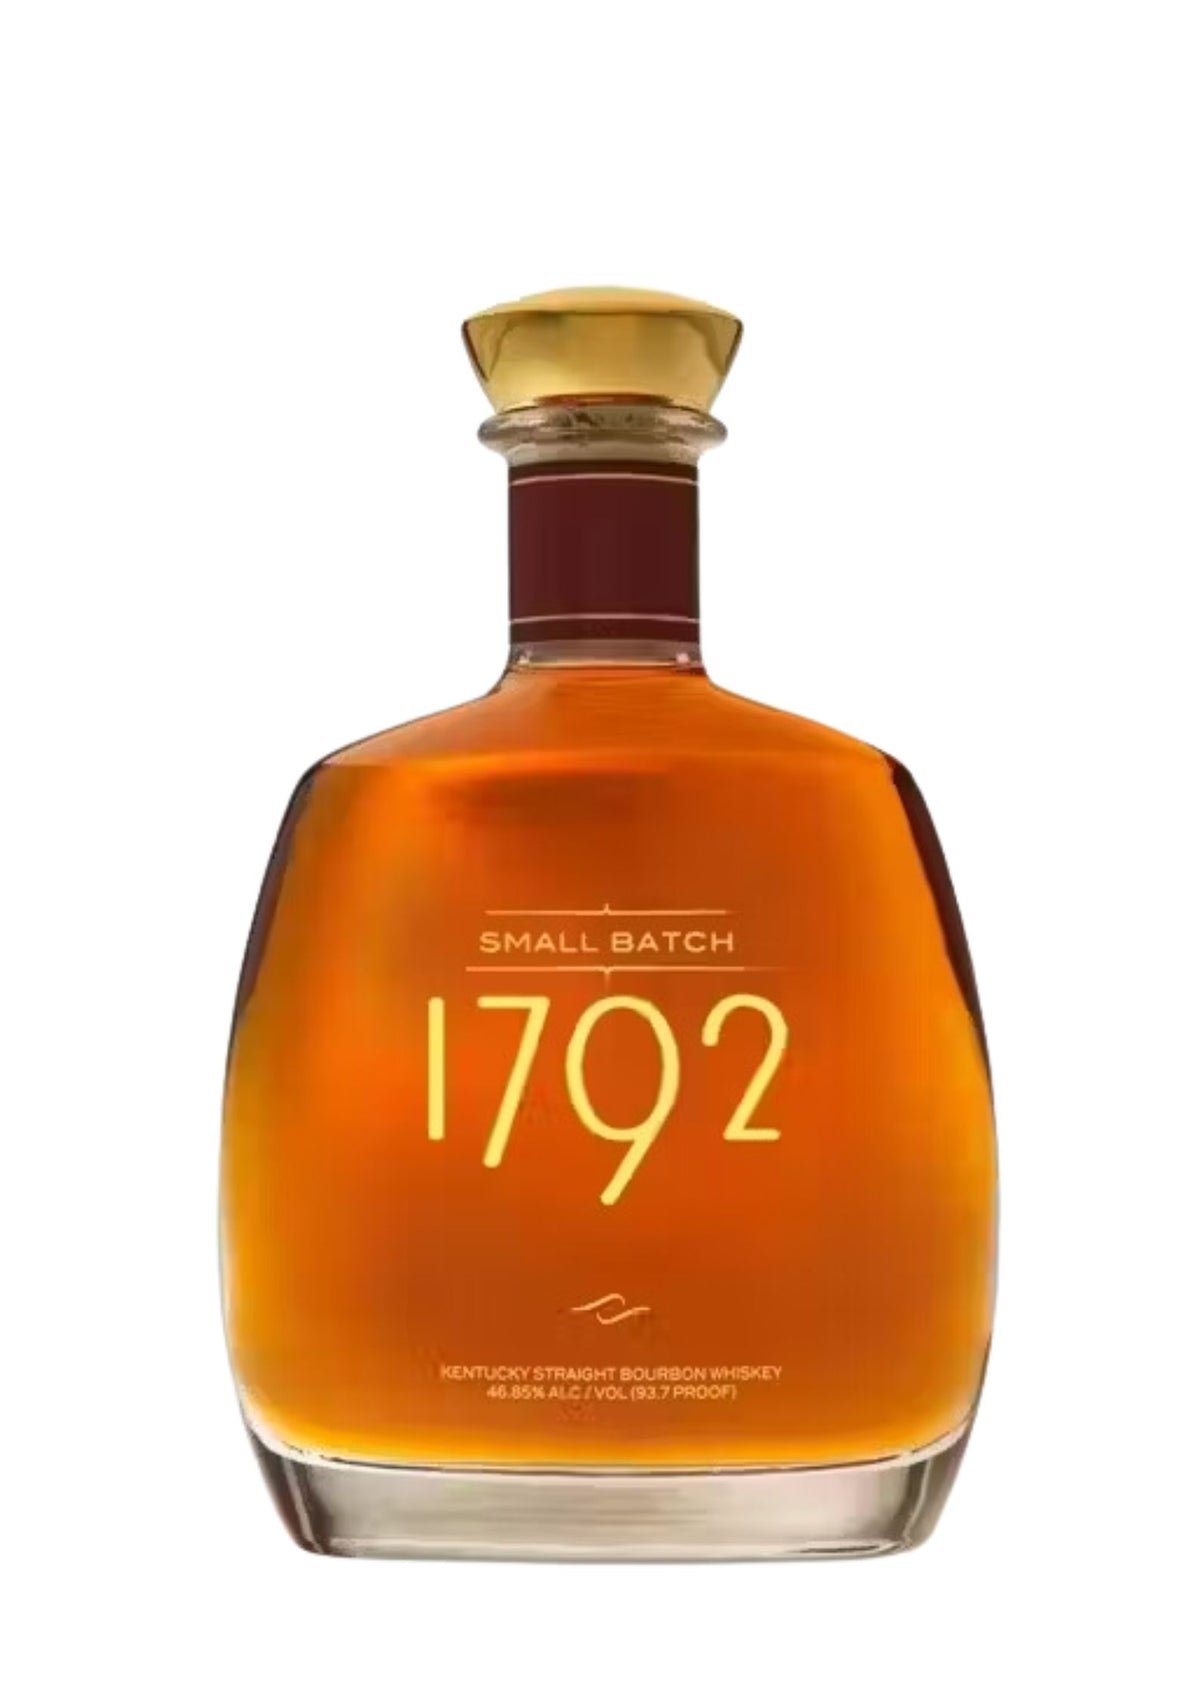 1792 Small Batch Kentucky Straight Bourbon, 46.85%